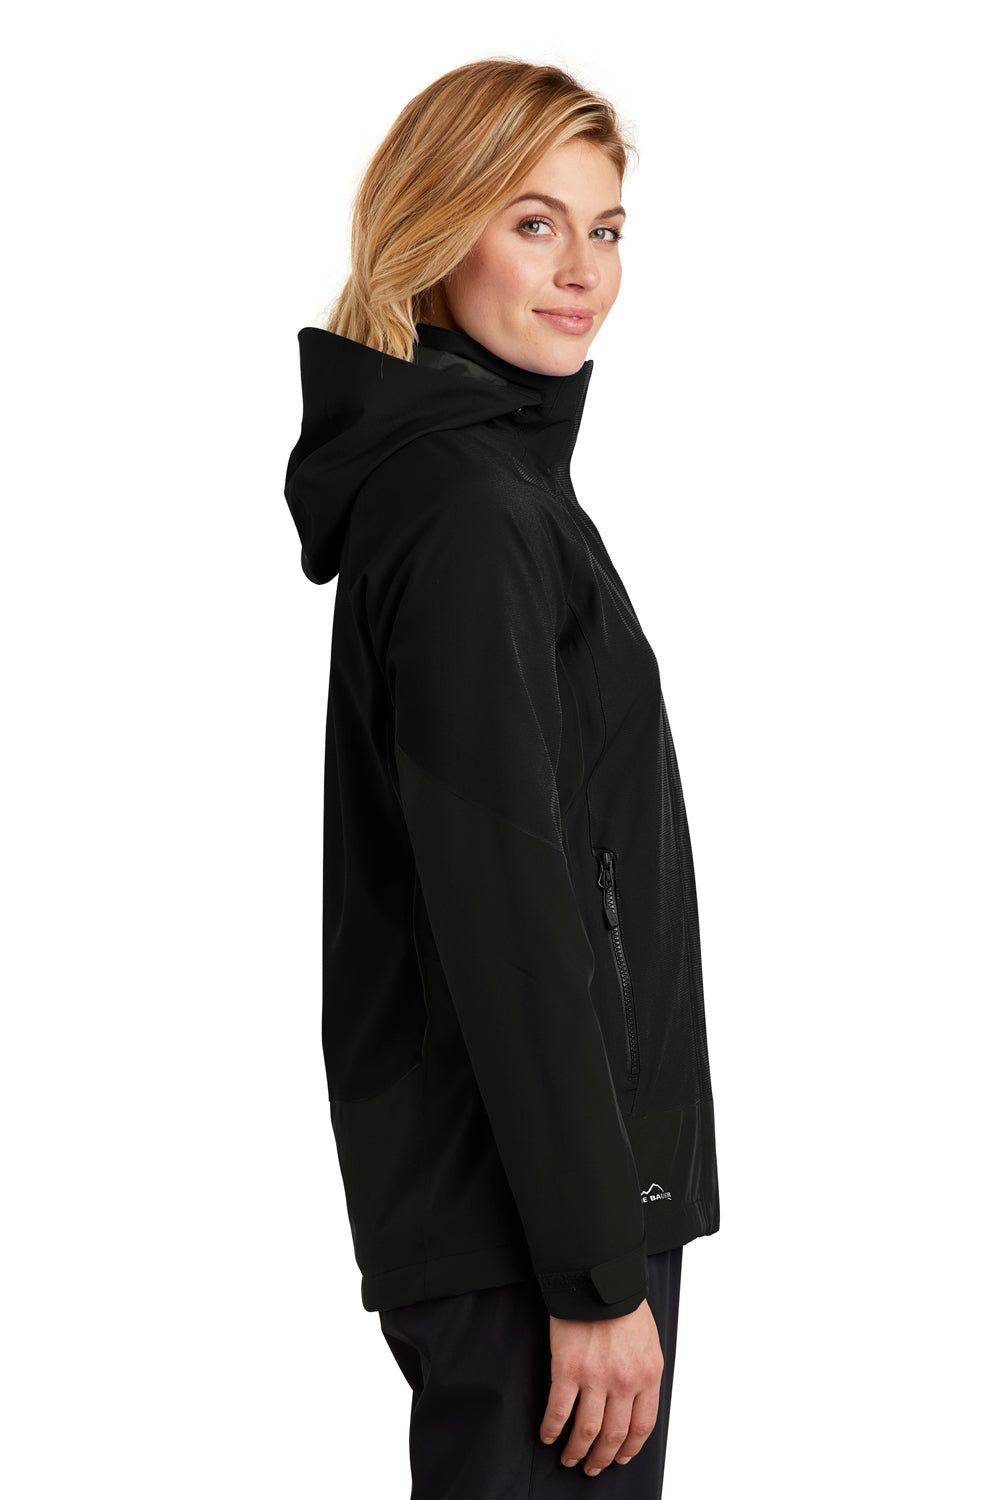 Eddie Bauer EB559 Womens WeatherEdge Waterproof Full Zip Hooded Jacket Black Model Side